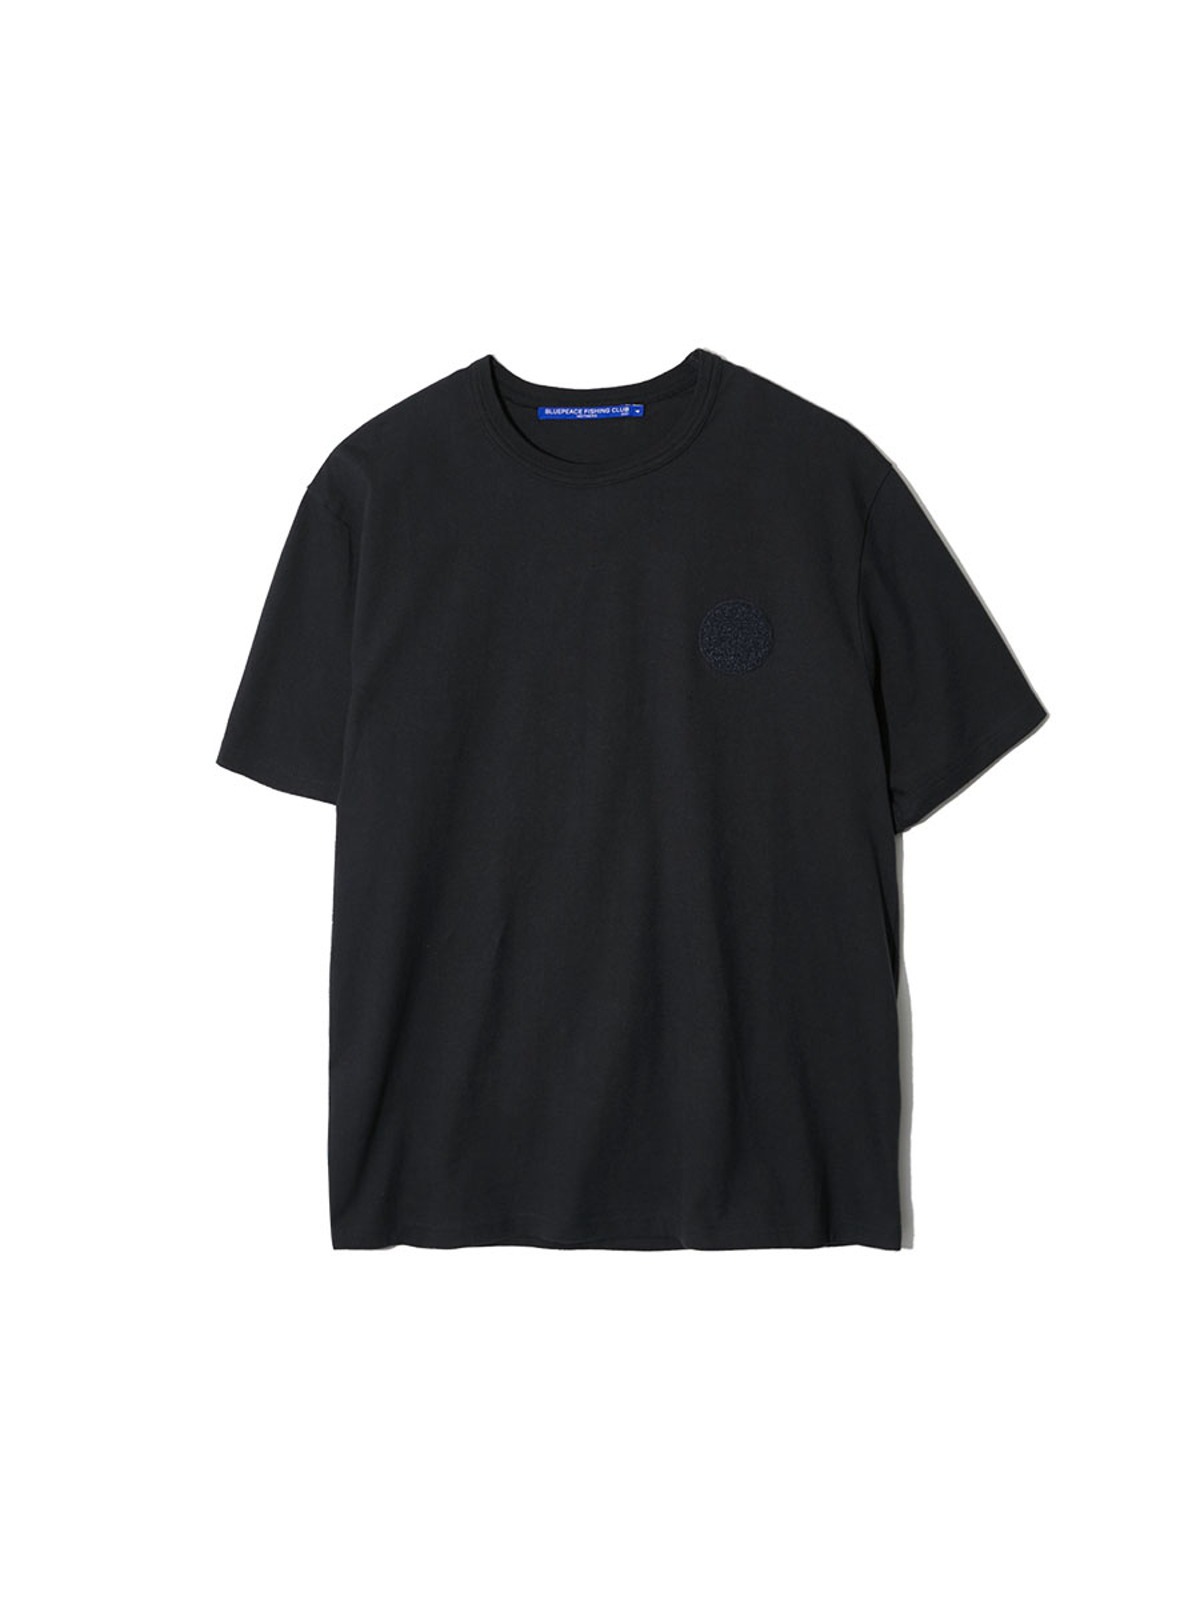 Undercover Basic S/S T-Shirt (Black)